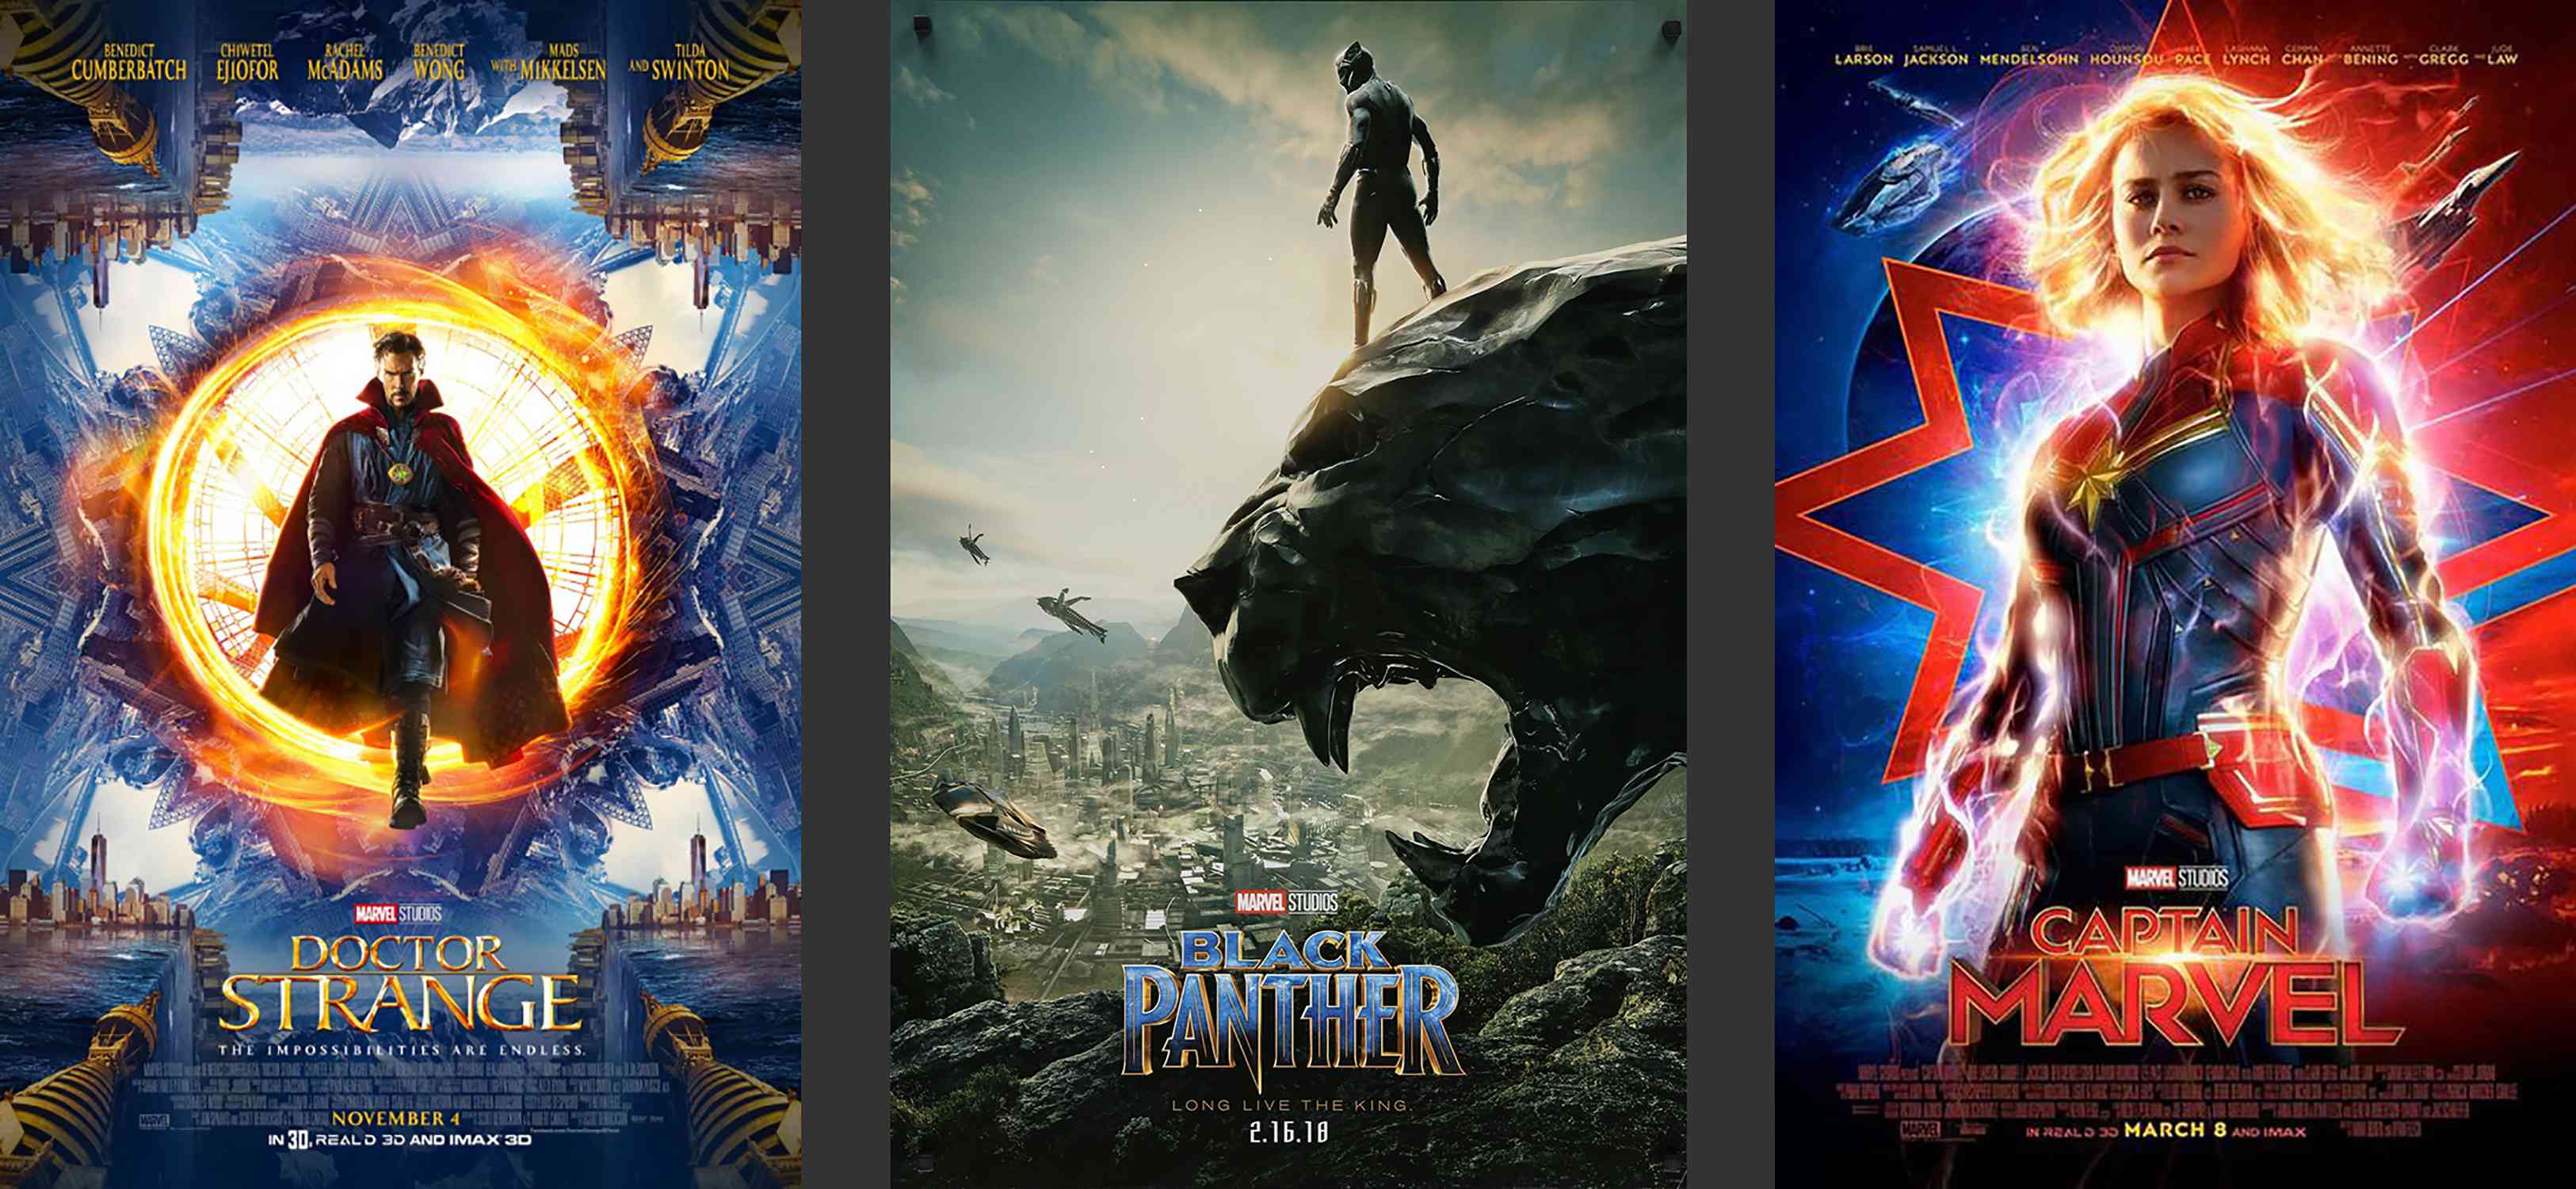 Marvel Movies Phase 3 Affischer